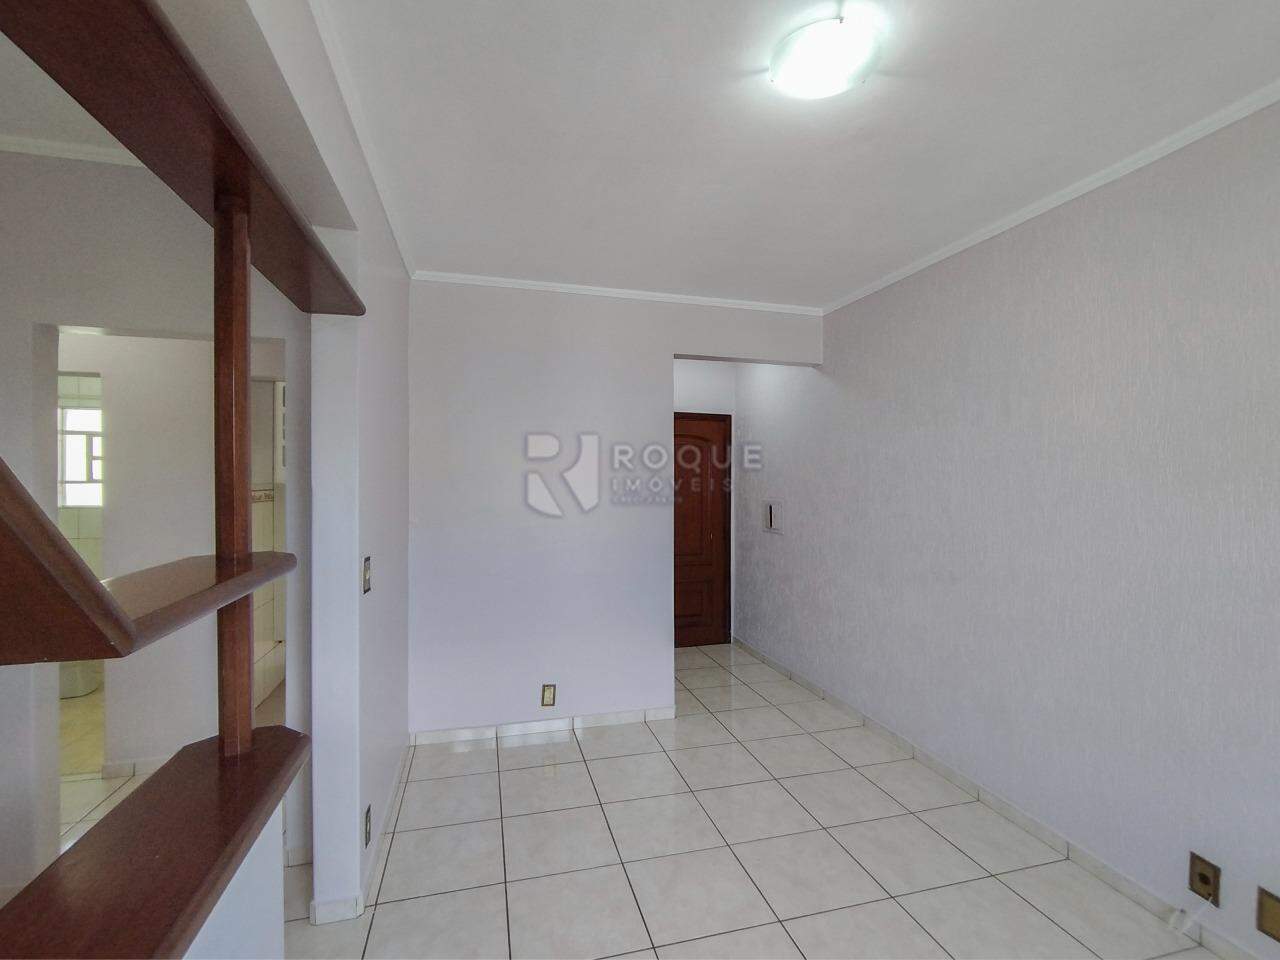 Apartamento para aluguel no bairro Cidade Jardim: Sala 